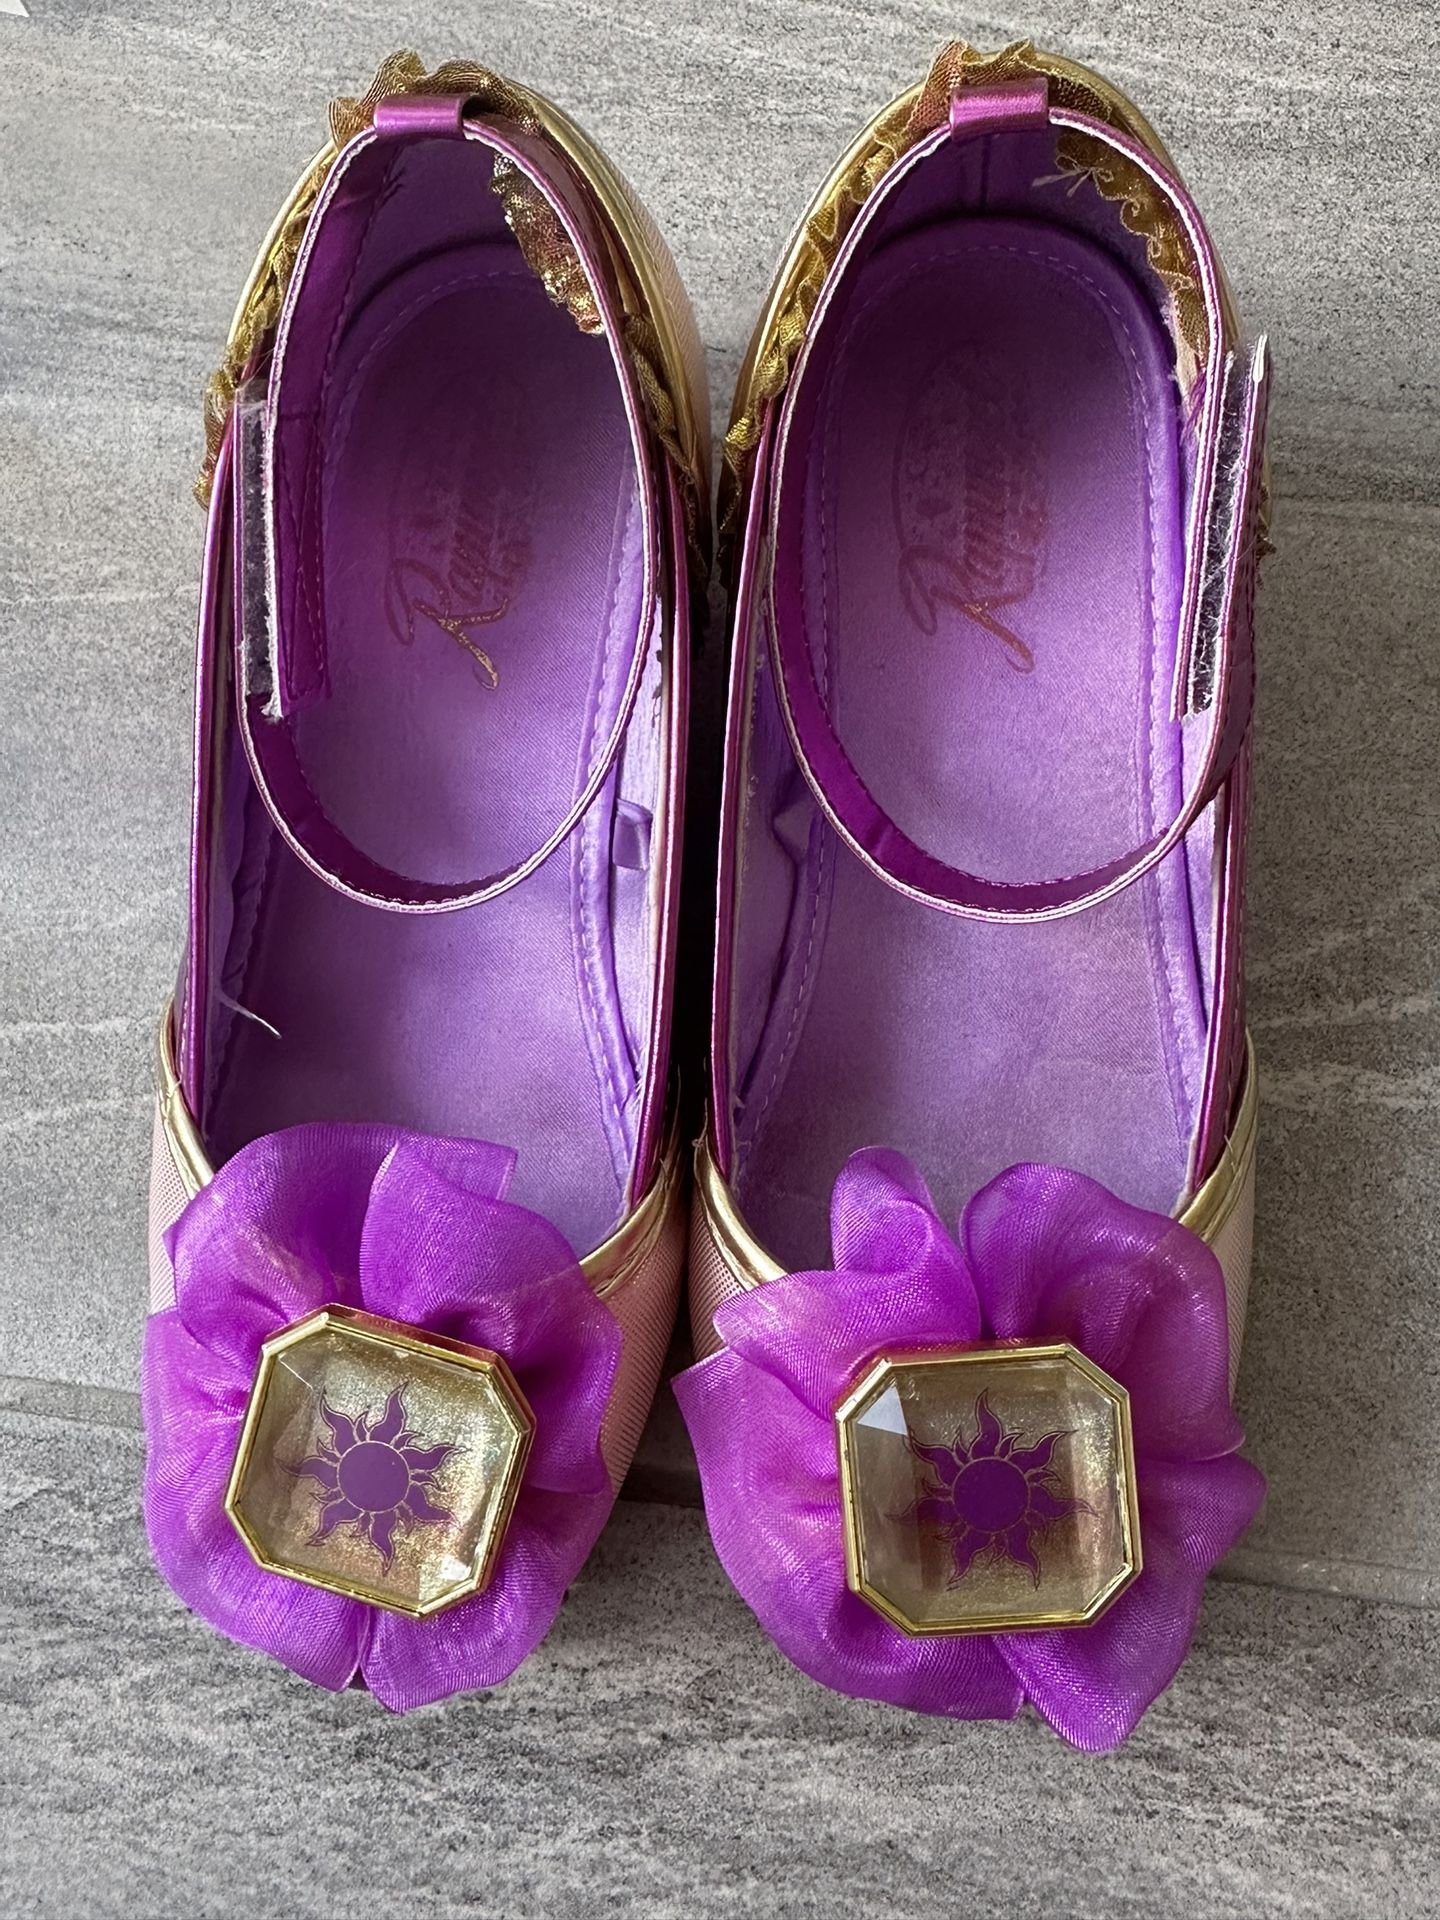 Rapunzel Dress Up Shoes, Size 13/1